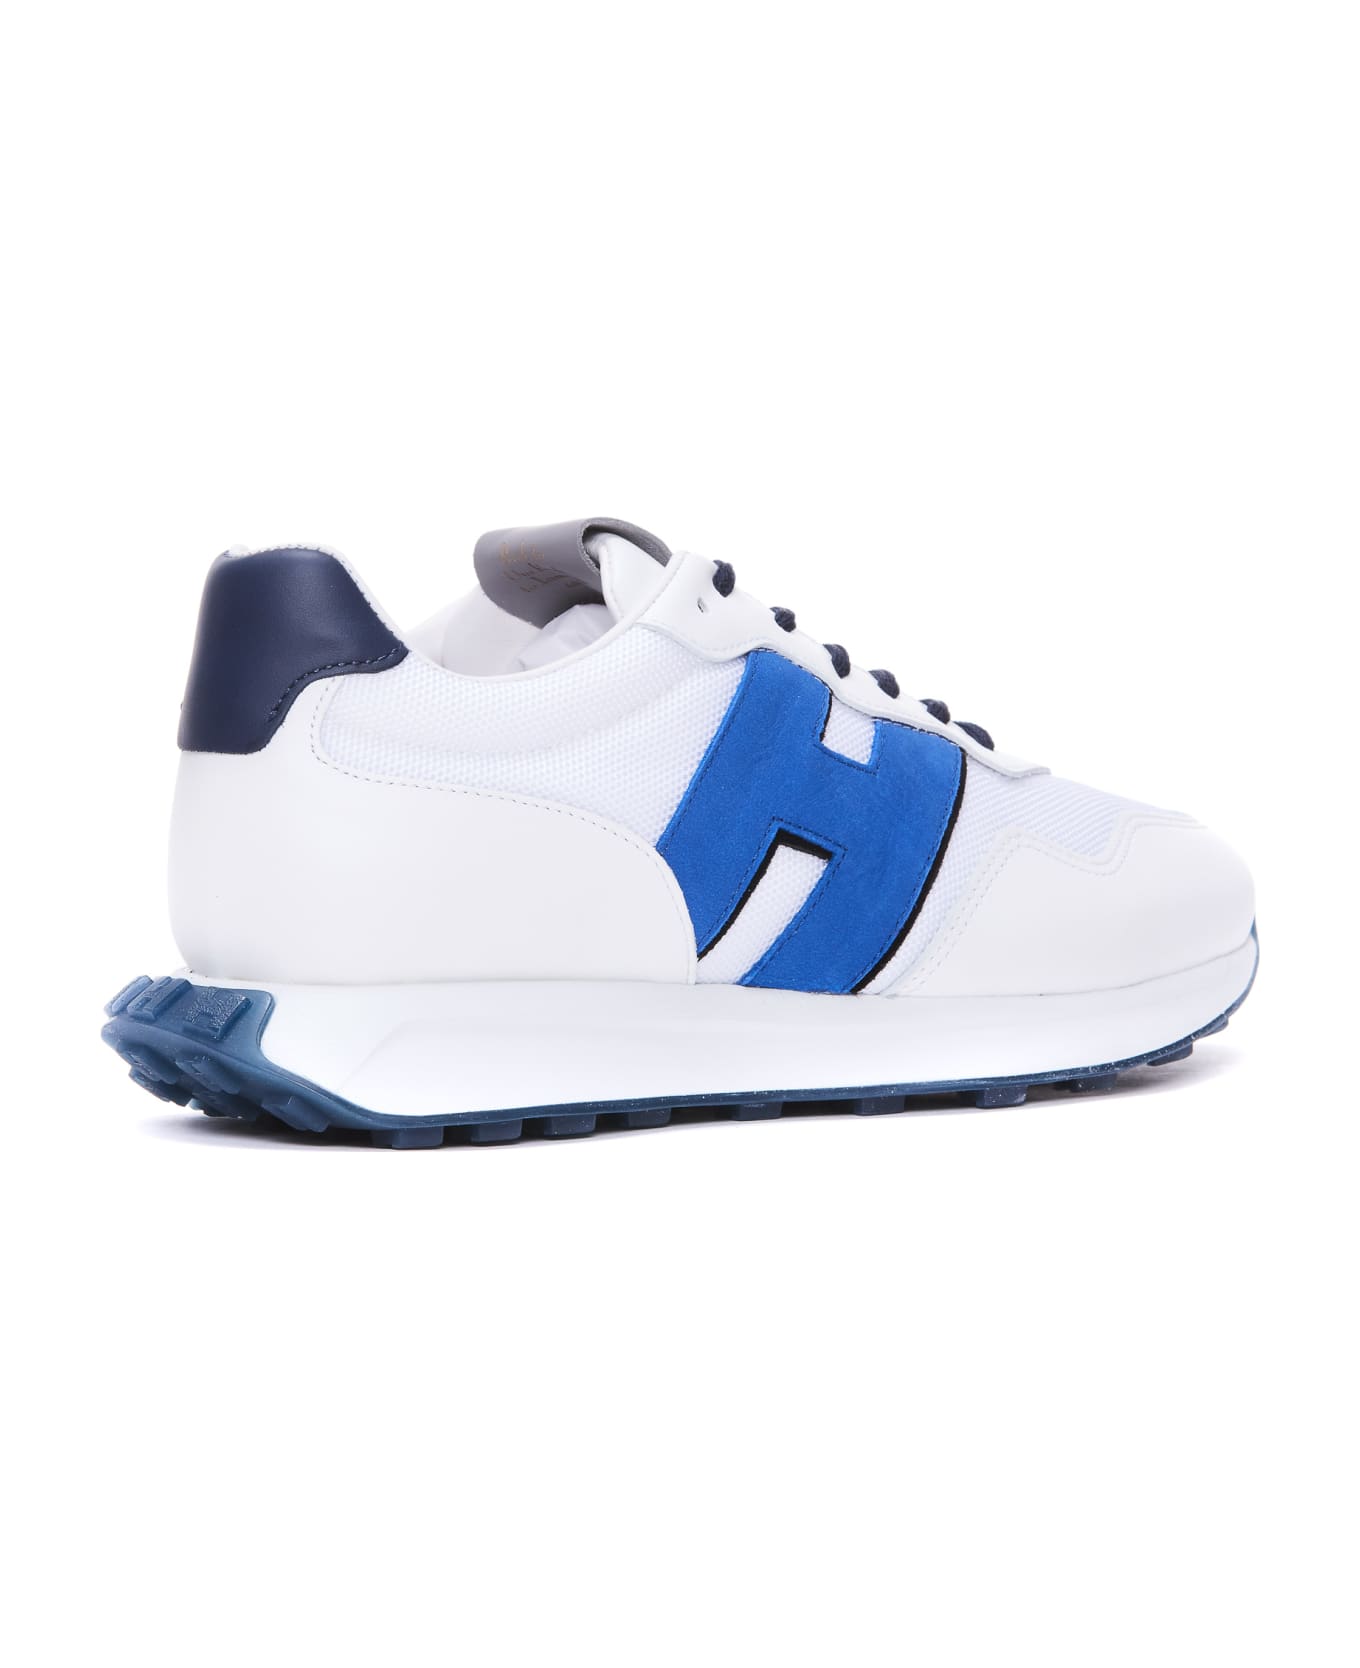 Hogan H601 Sneakers - MULTICOLOR